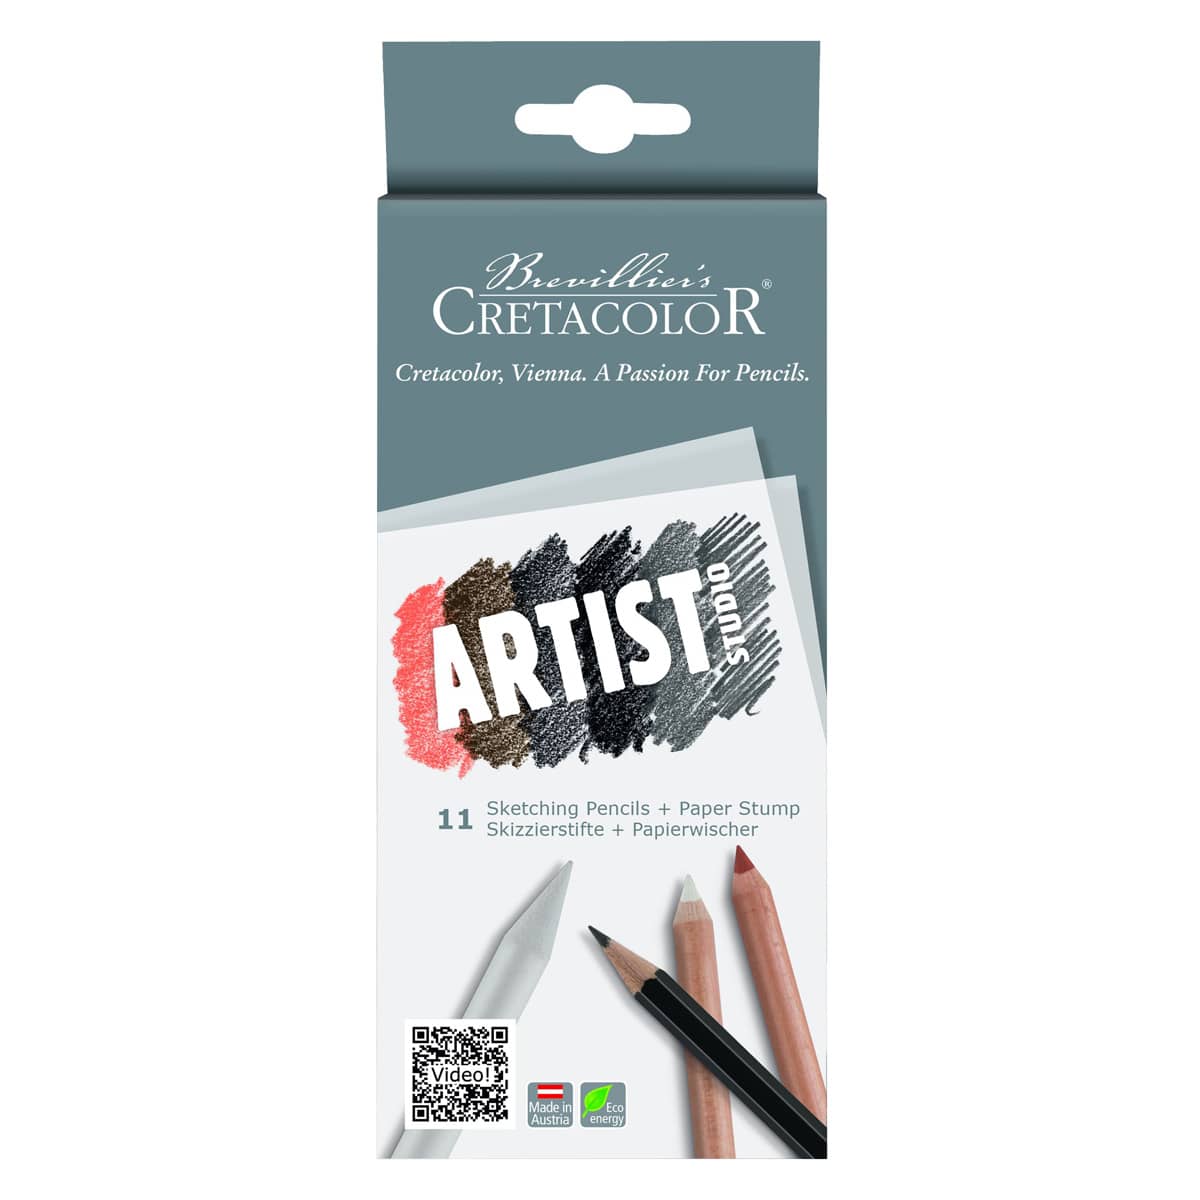 Cretacolor Artist Studio Set of 11 Sketching Pencils + Paper Stump